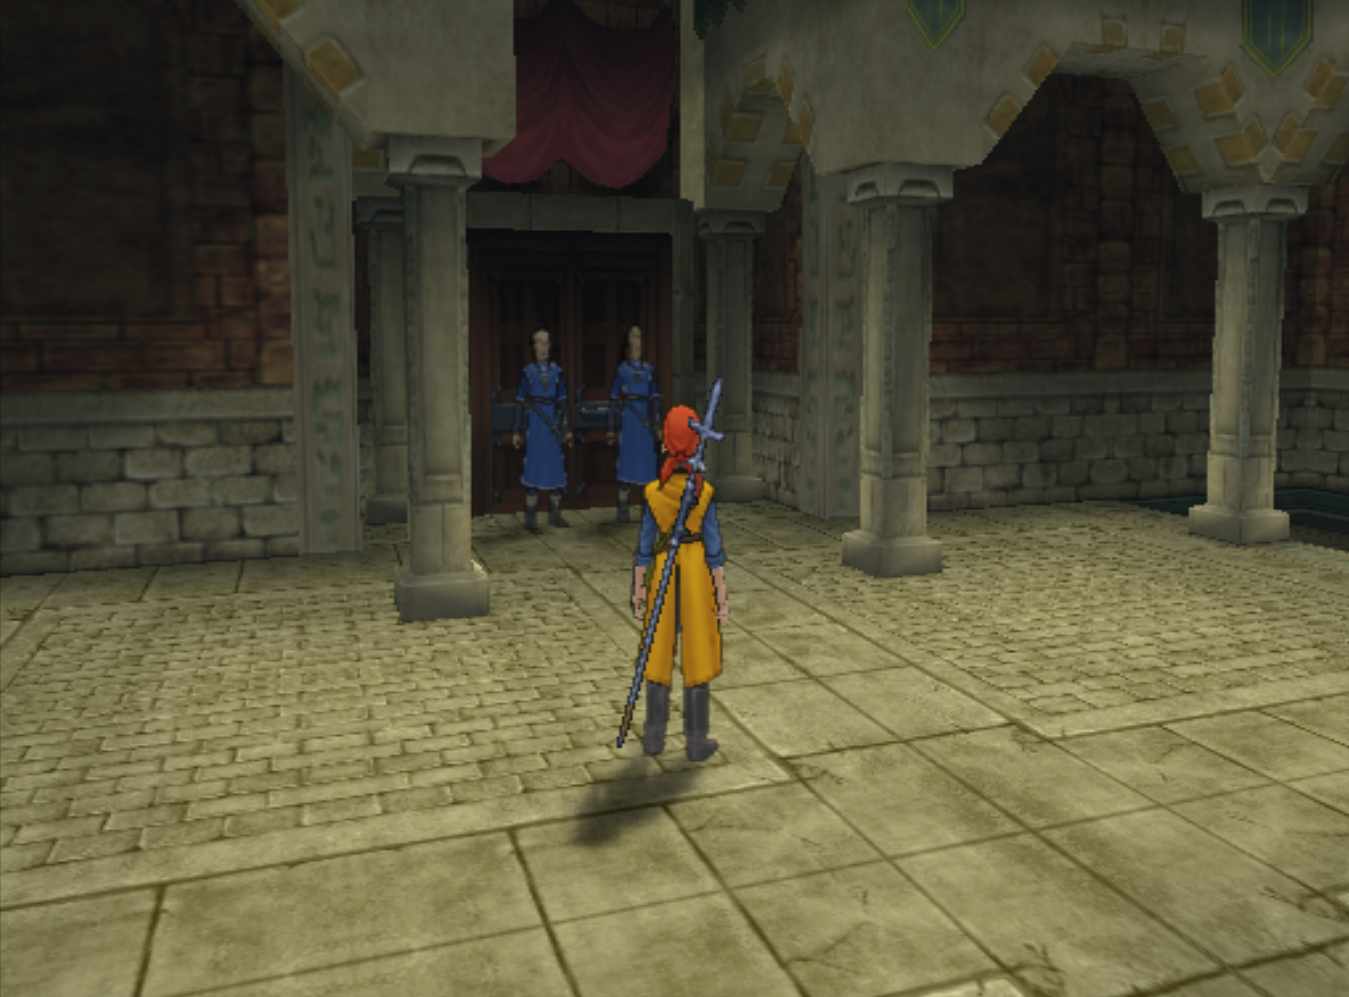 Maella Abbey Guards